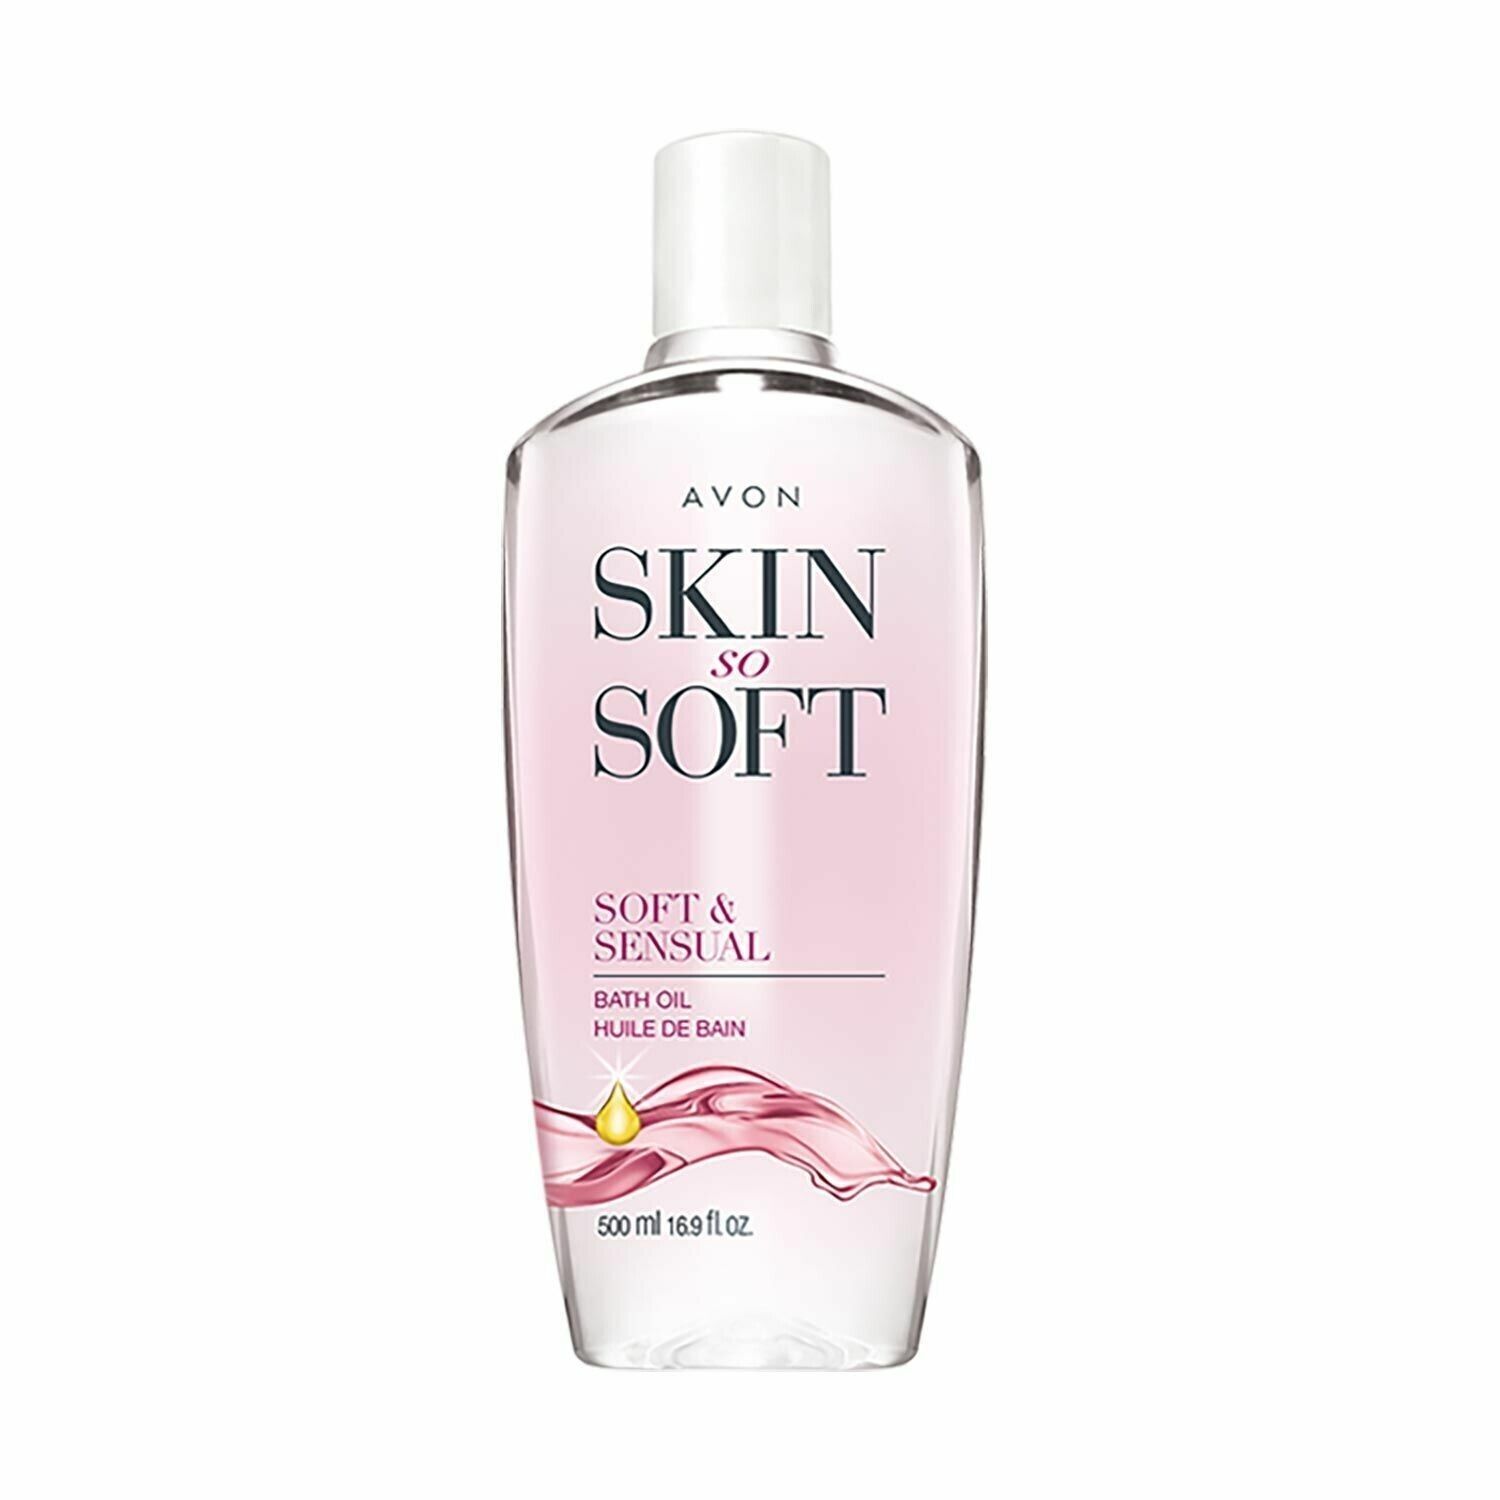 Avon Skin So Soft Soft & Sensual Bath Oil 16.9 oz - $22.28